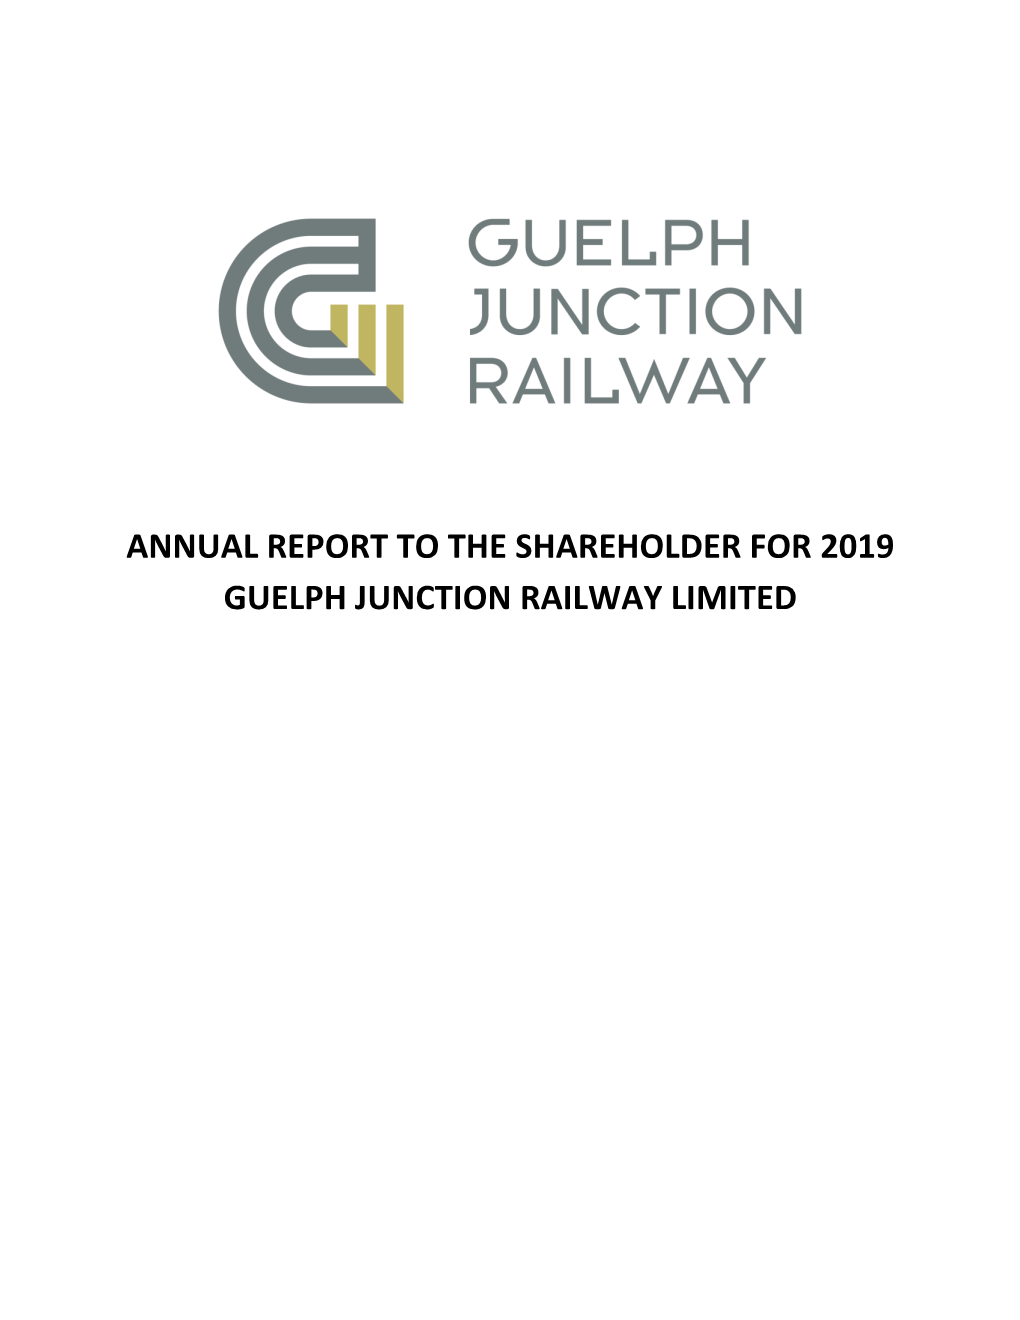 Attachment-1 GJR Annual Report 2019.Docx